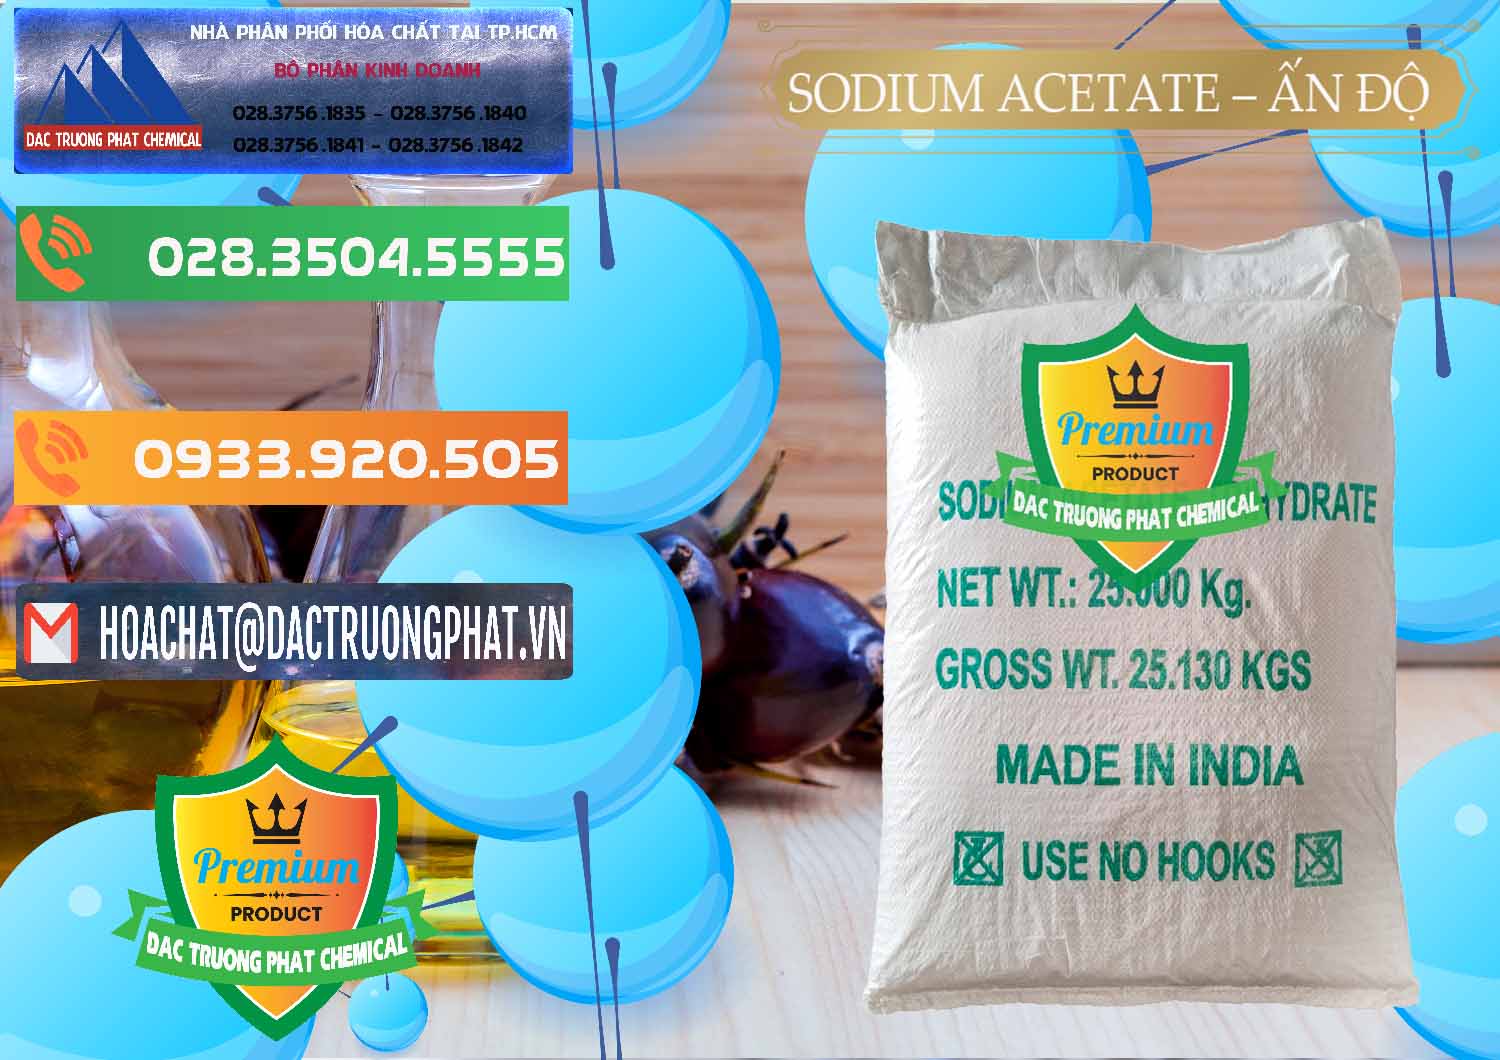 Cty nhập khẩu _ bán Sodium Acetate - Natri Acetate Ấn Độ India - 0133 - Cty chuyên phân phối _ cung ứng hóa chất tại TP.HCM - hoachatxulynuoc.com.vn